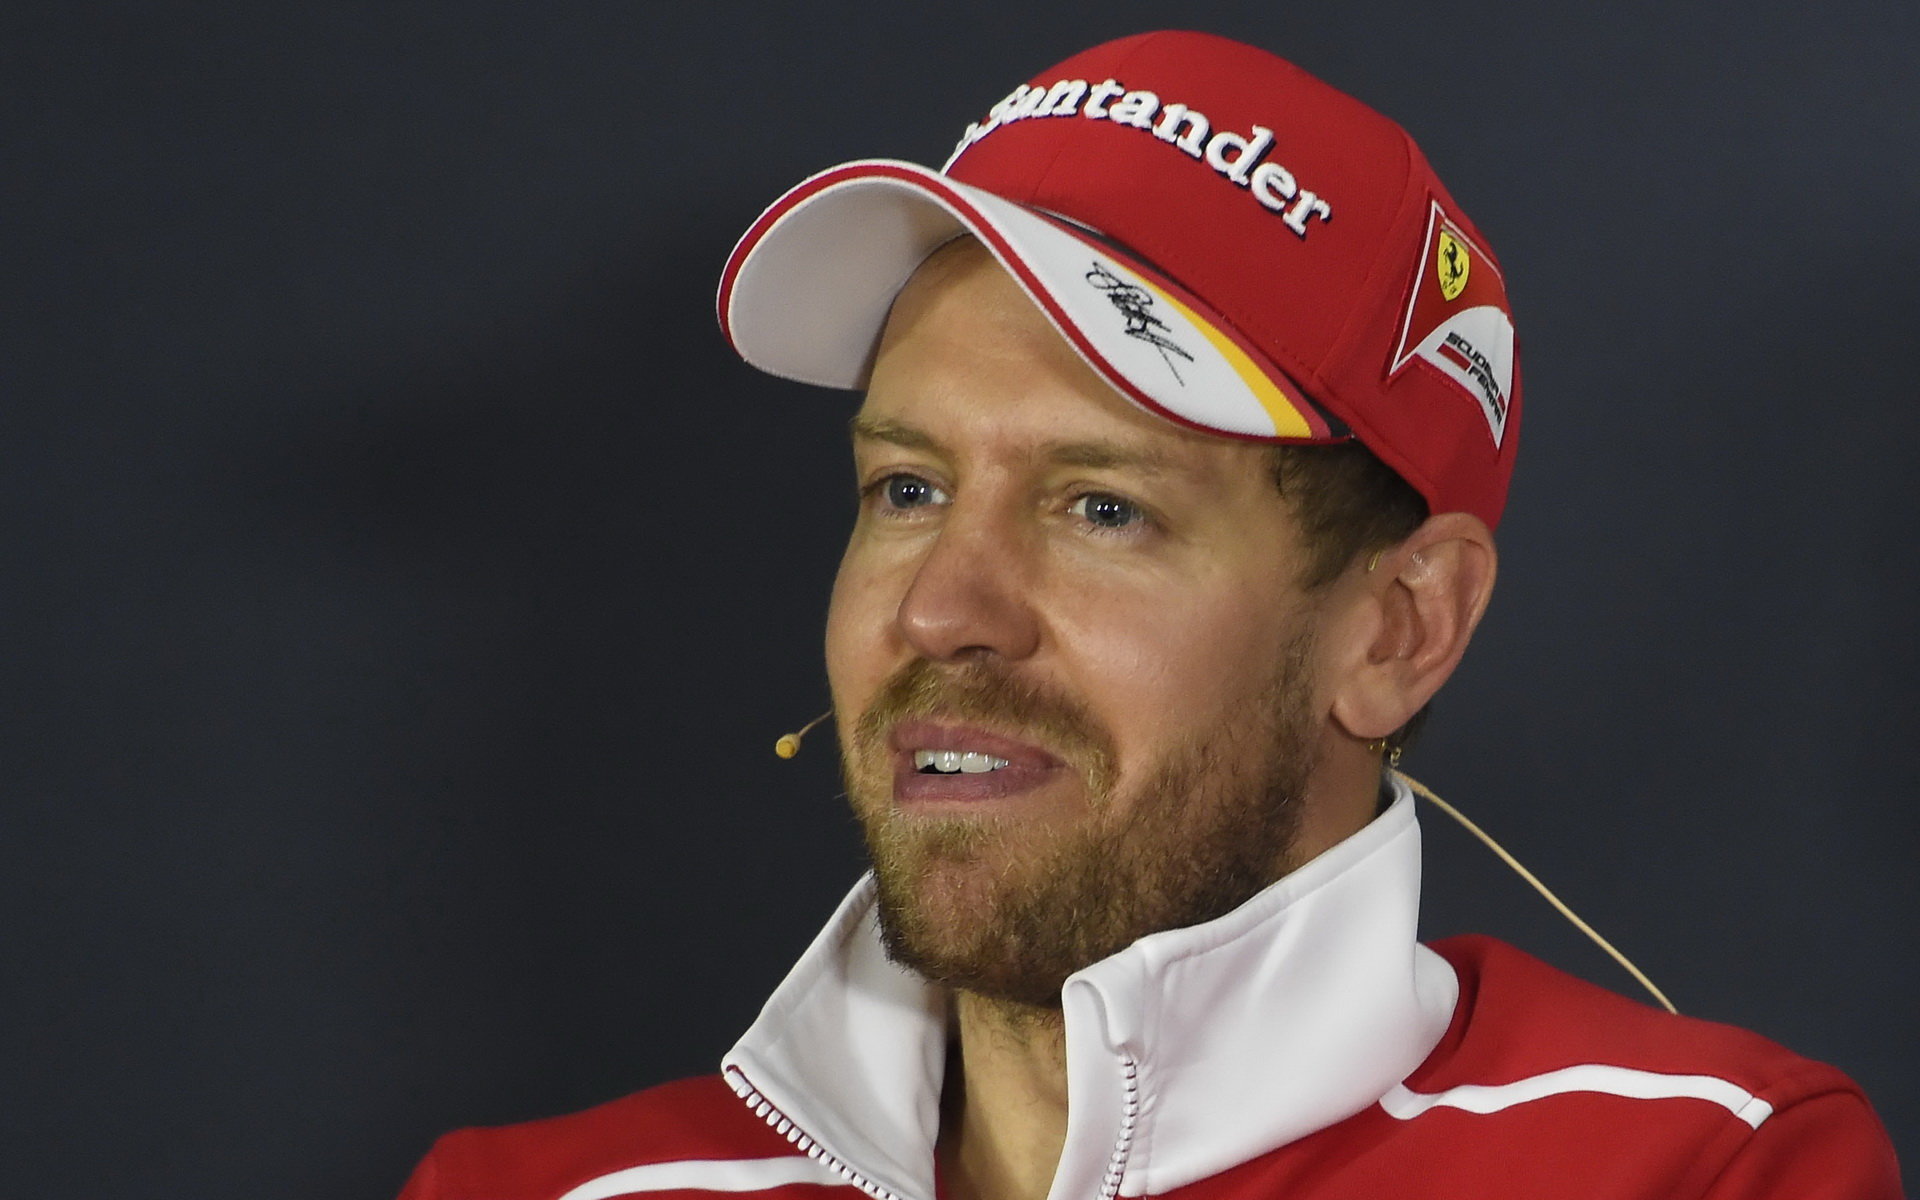 Sebastian Vettel čelí po závodu v Baku velké kritice